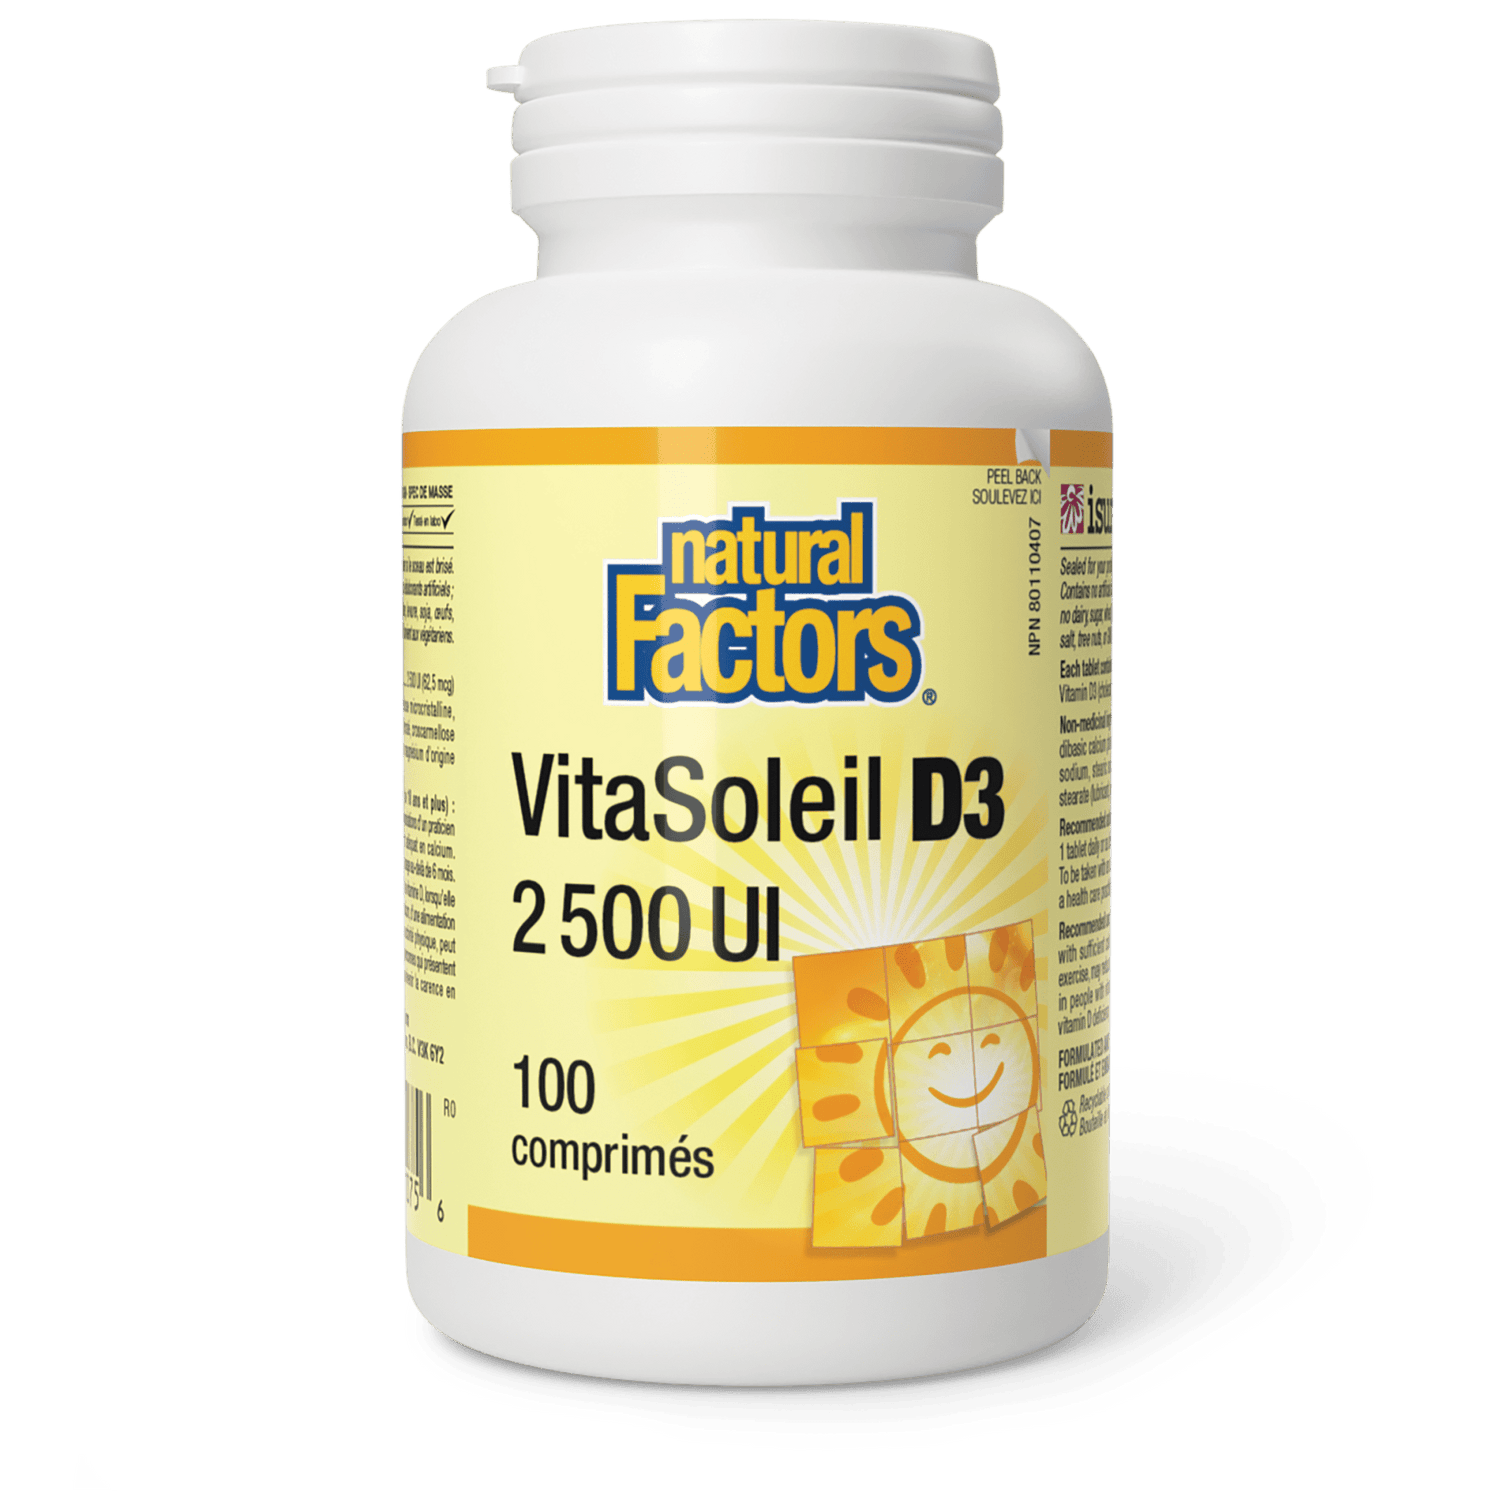 VitaSoleil D3 comprimés 2 500 UI, Natural Factors|v|image|1075